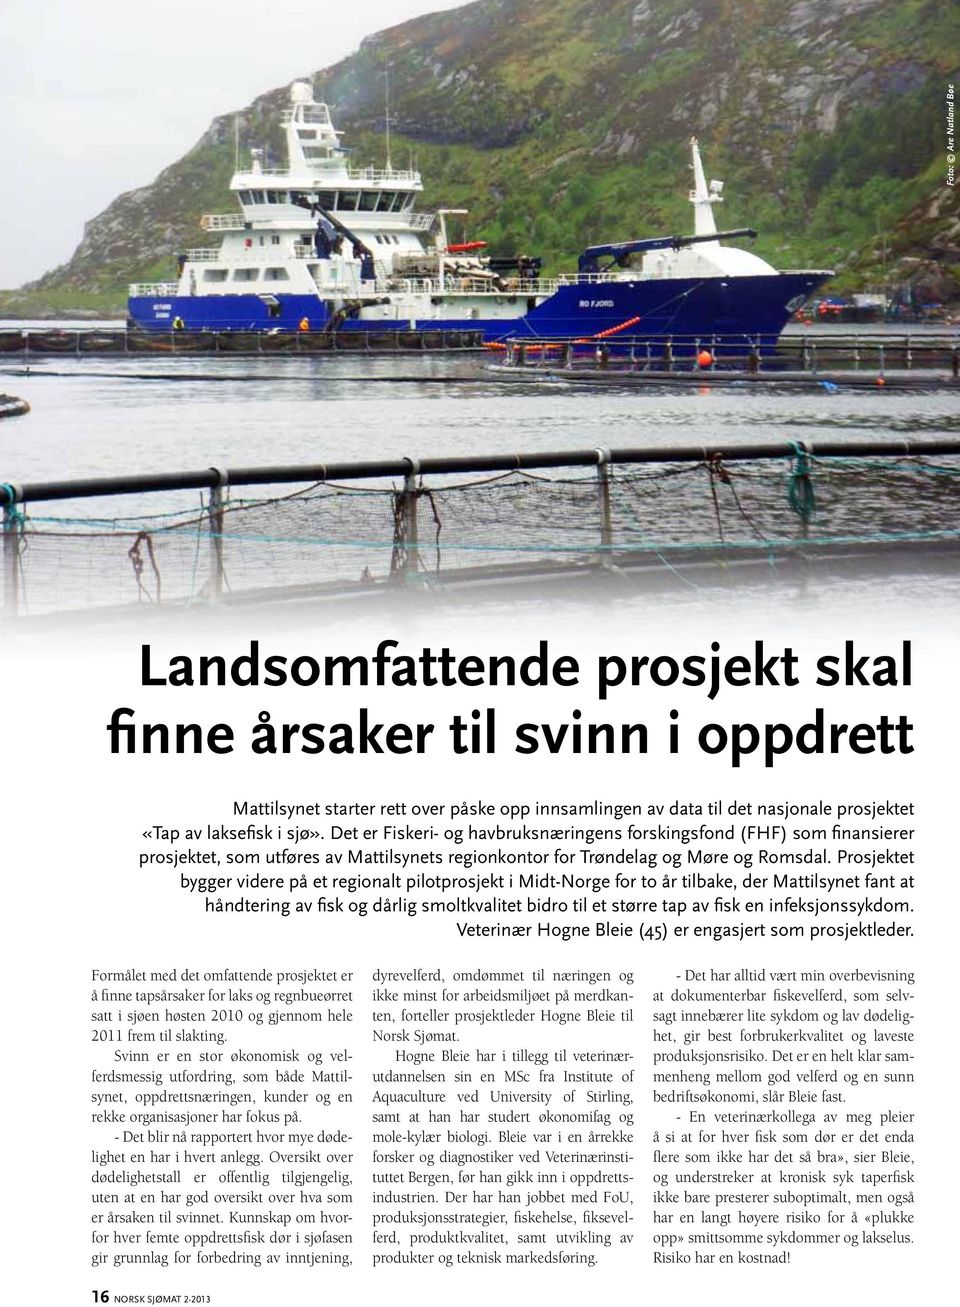 Prosjektet bygger videre på et regionalt pilotprosjekt i Midt-Norge for to år tilbake, der Mattilsynet fant at håndtering av fisk og dårlig smoltkvalitet bidro til et større tap av fisk en